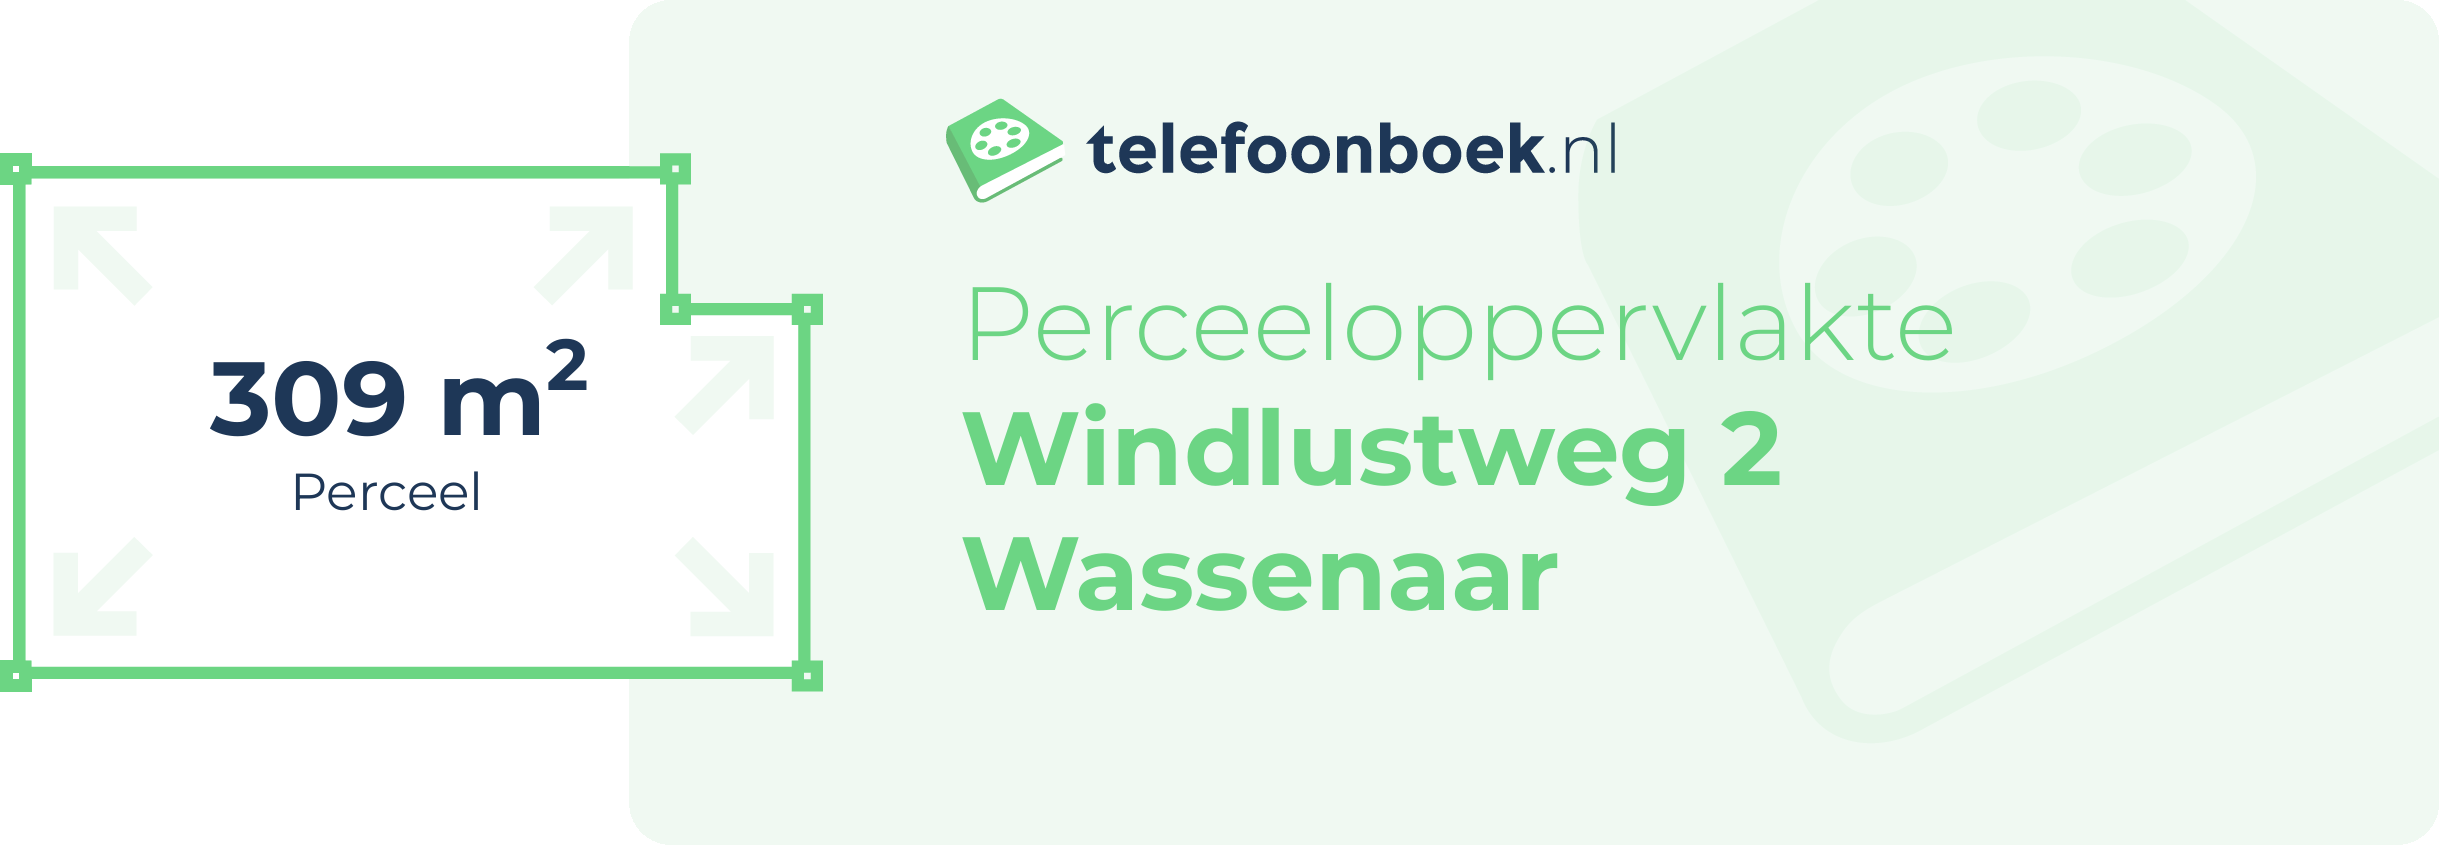 Perceeloppervlakte Windlustweg 2 Wassenaar